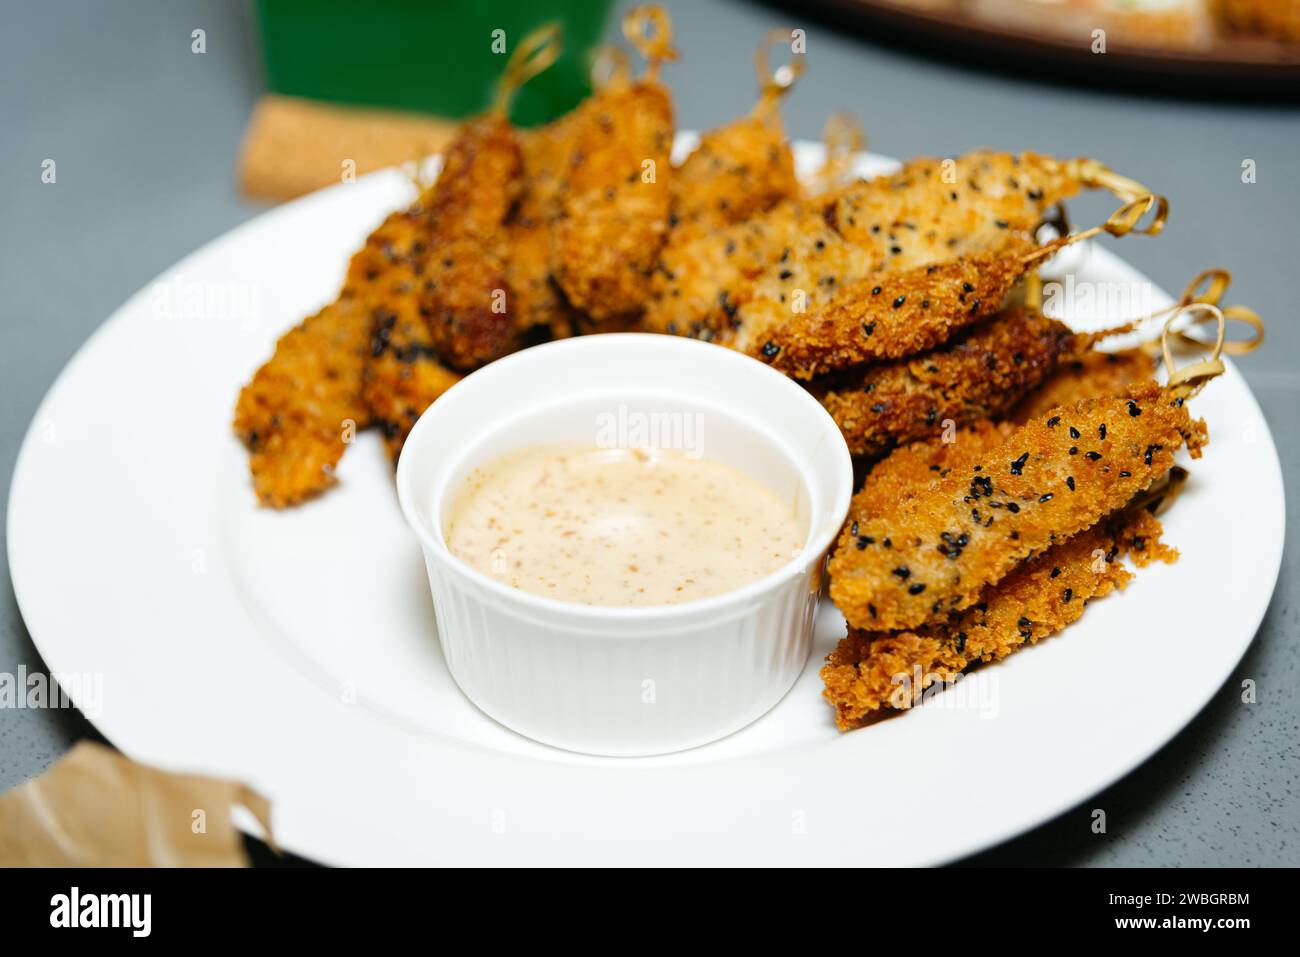 Goldene, frittierte Hähnchenstreifen mit Sesamsamen, serviert mit einem cremigen Dip auf einem weißen Teller, ideal für einen herzhaften Snack. Stockfoto